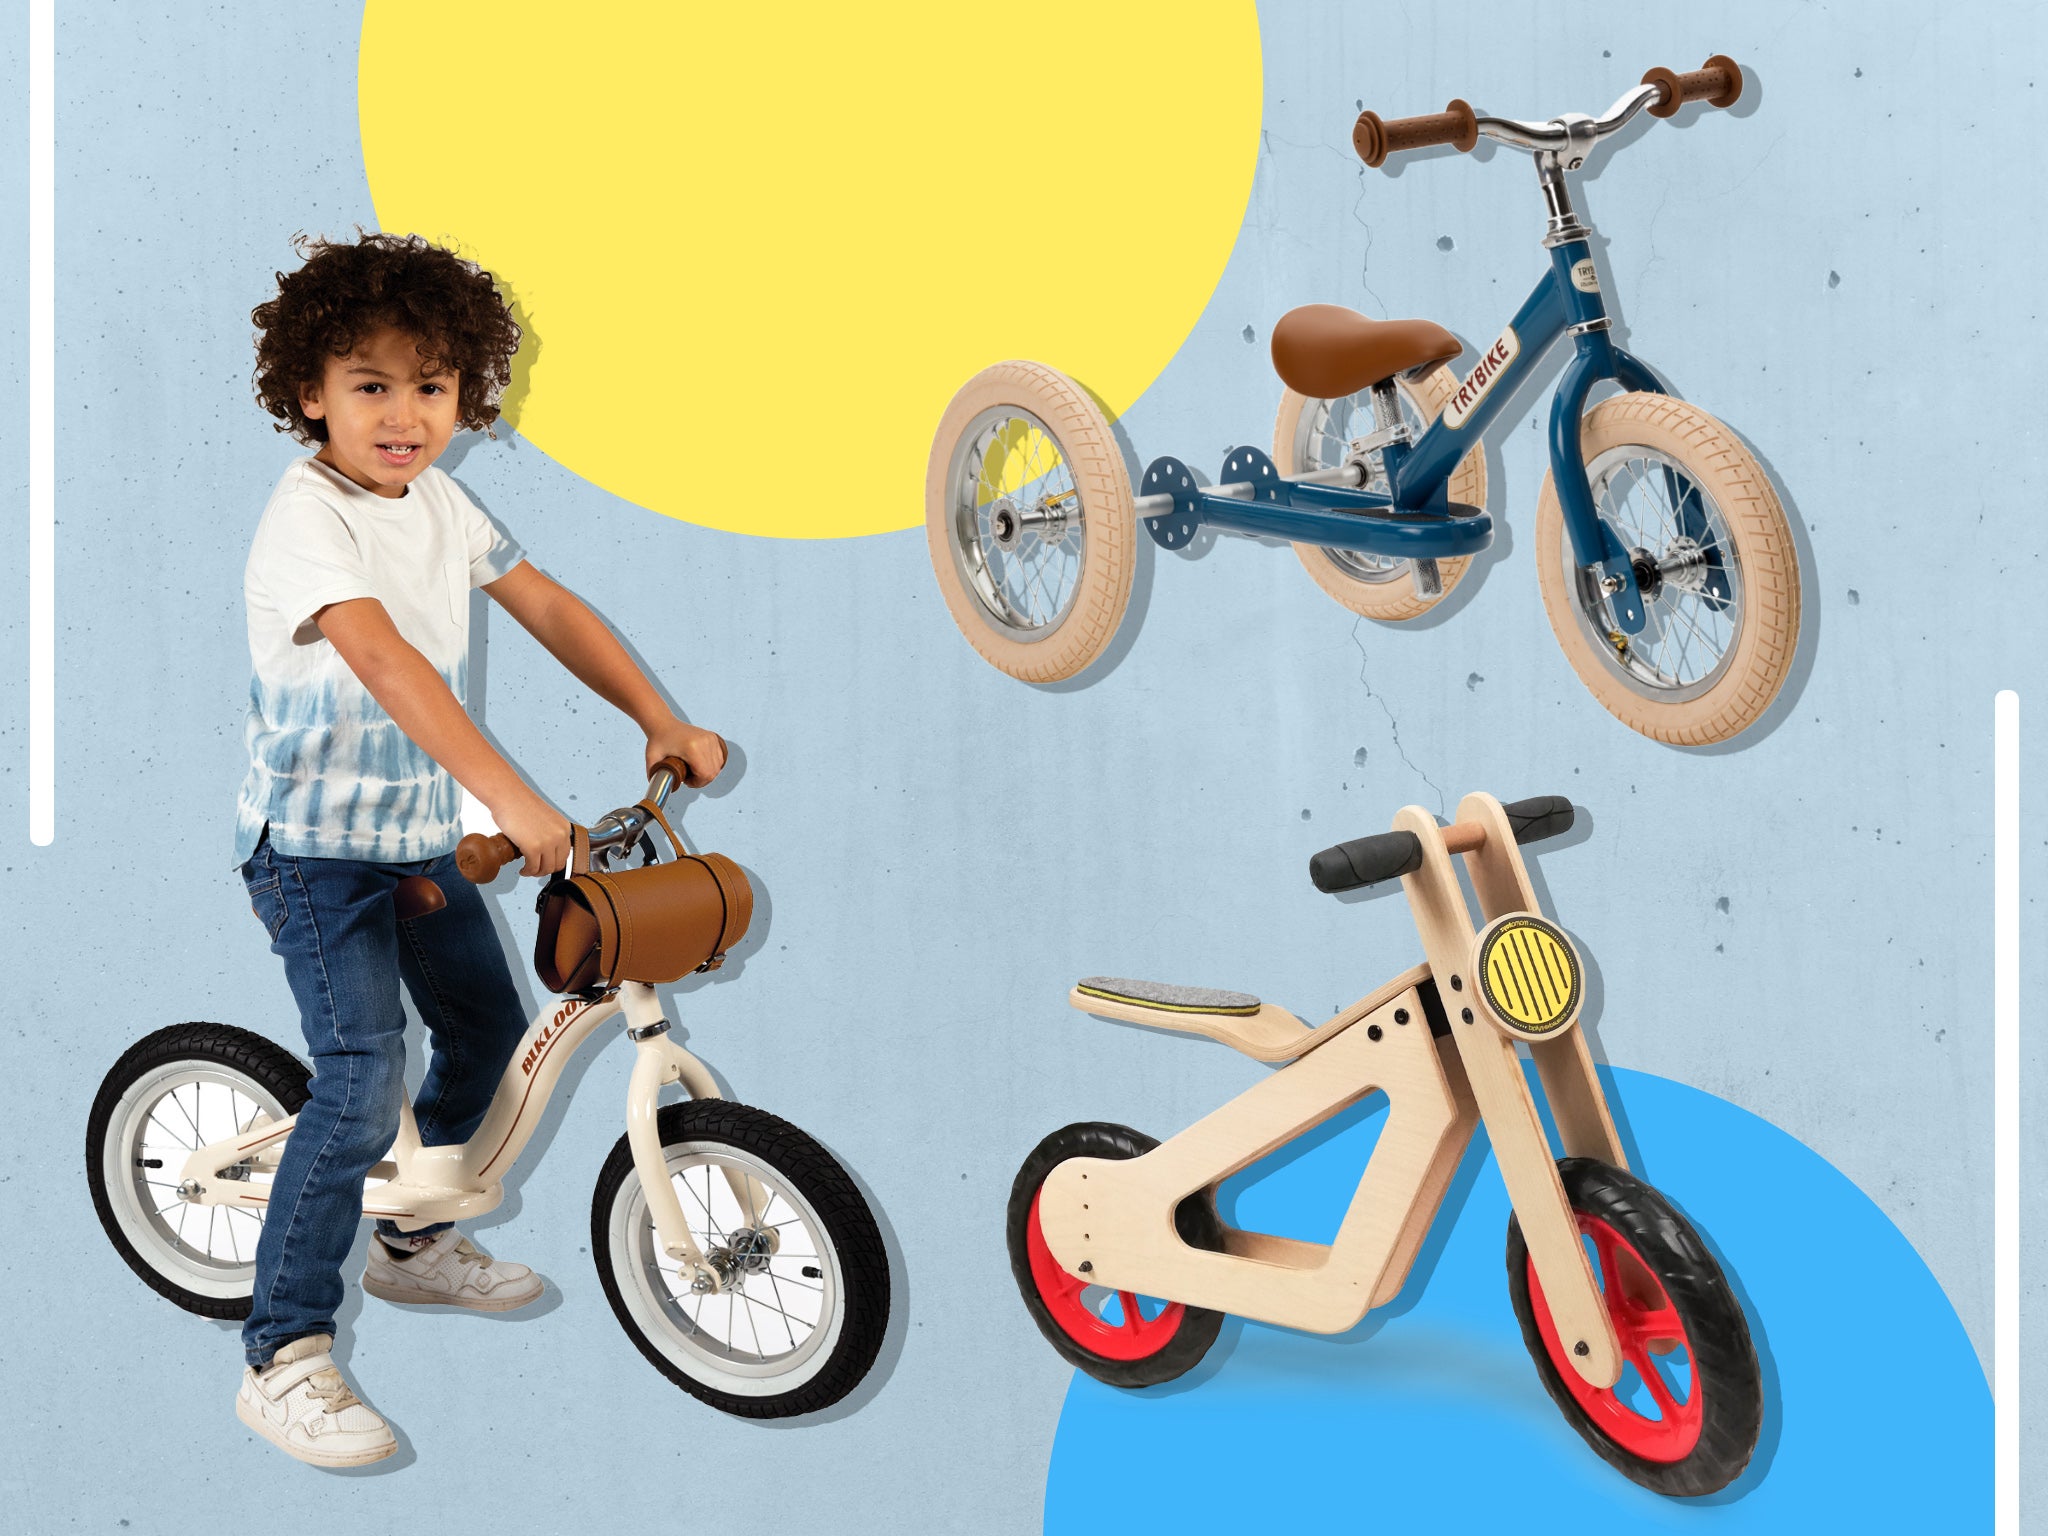 Kids Balance Bike Running Walking Training Bicycle Toy Gift Adjustable Seat UK 